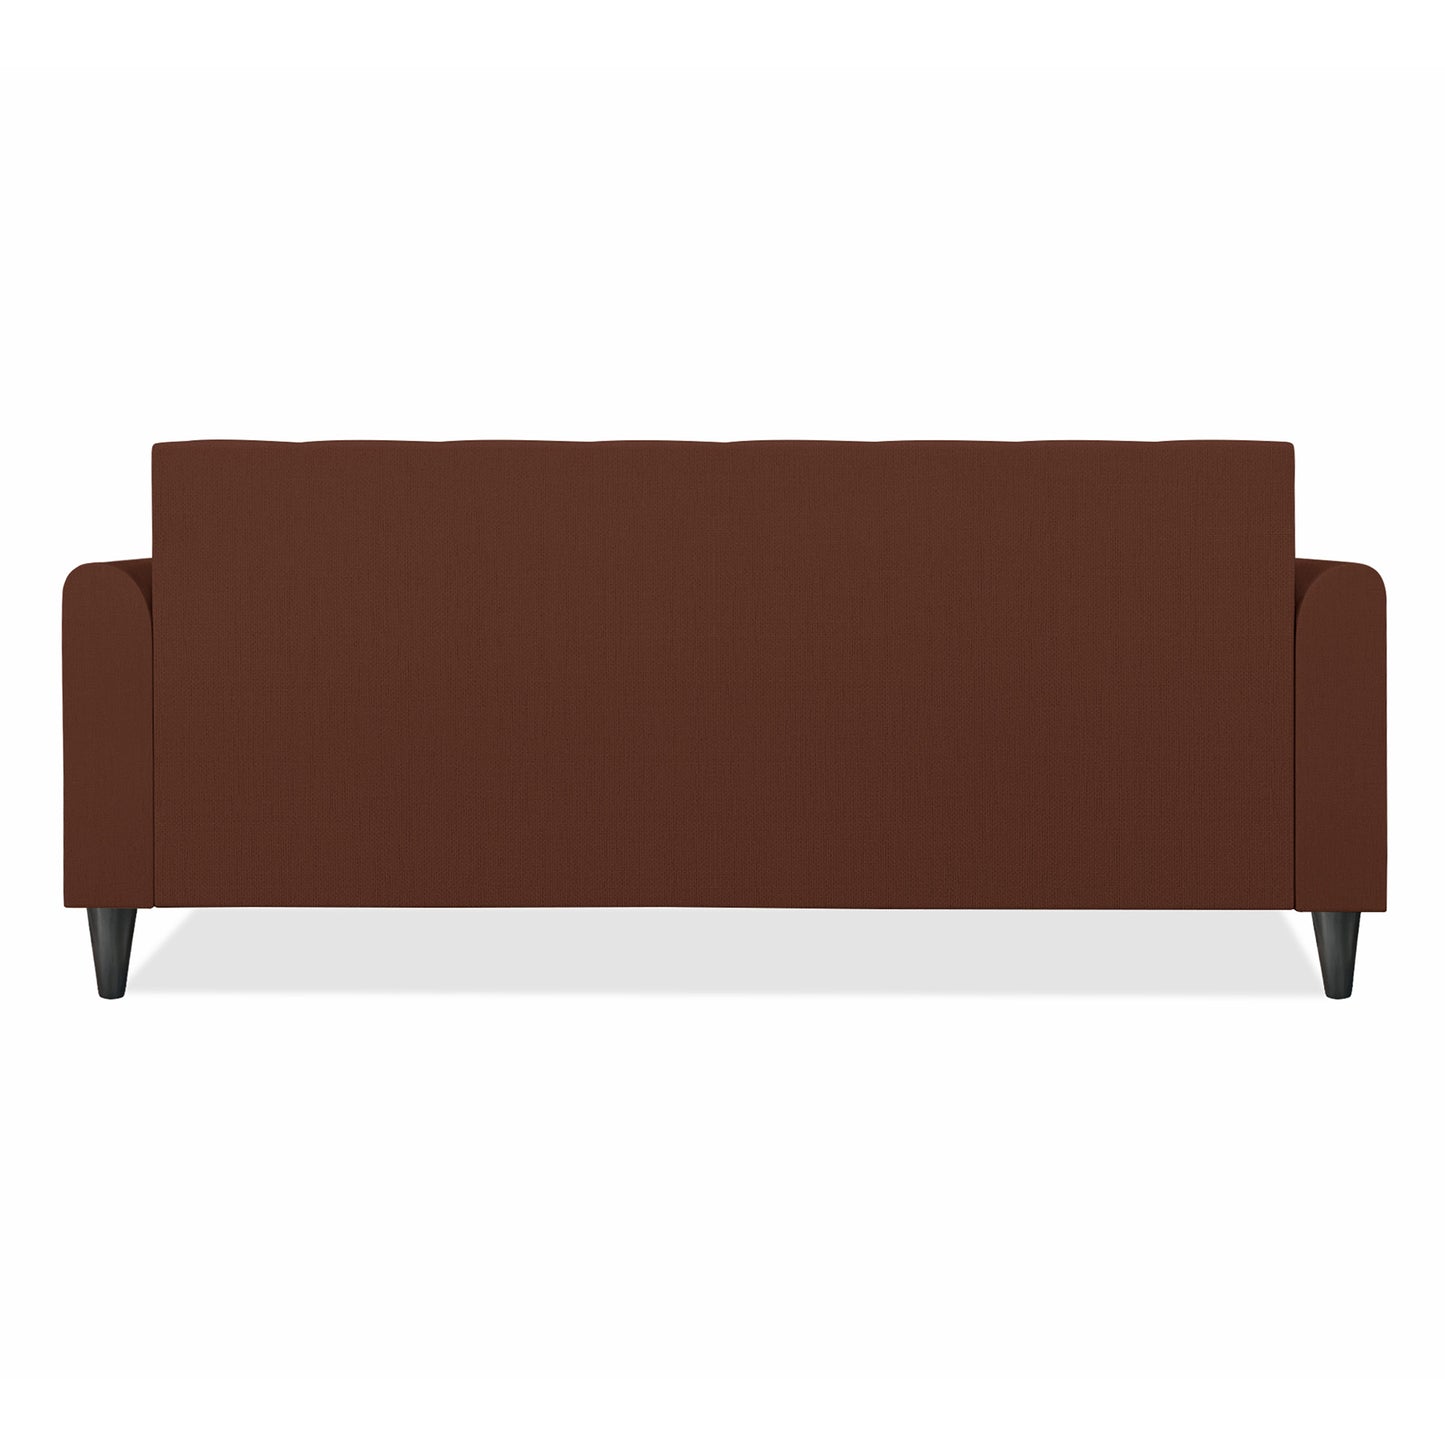 Adorn India Wood Rio Elegant 3 Seater Sofa